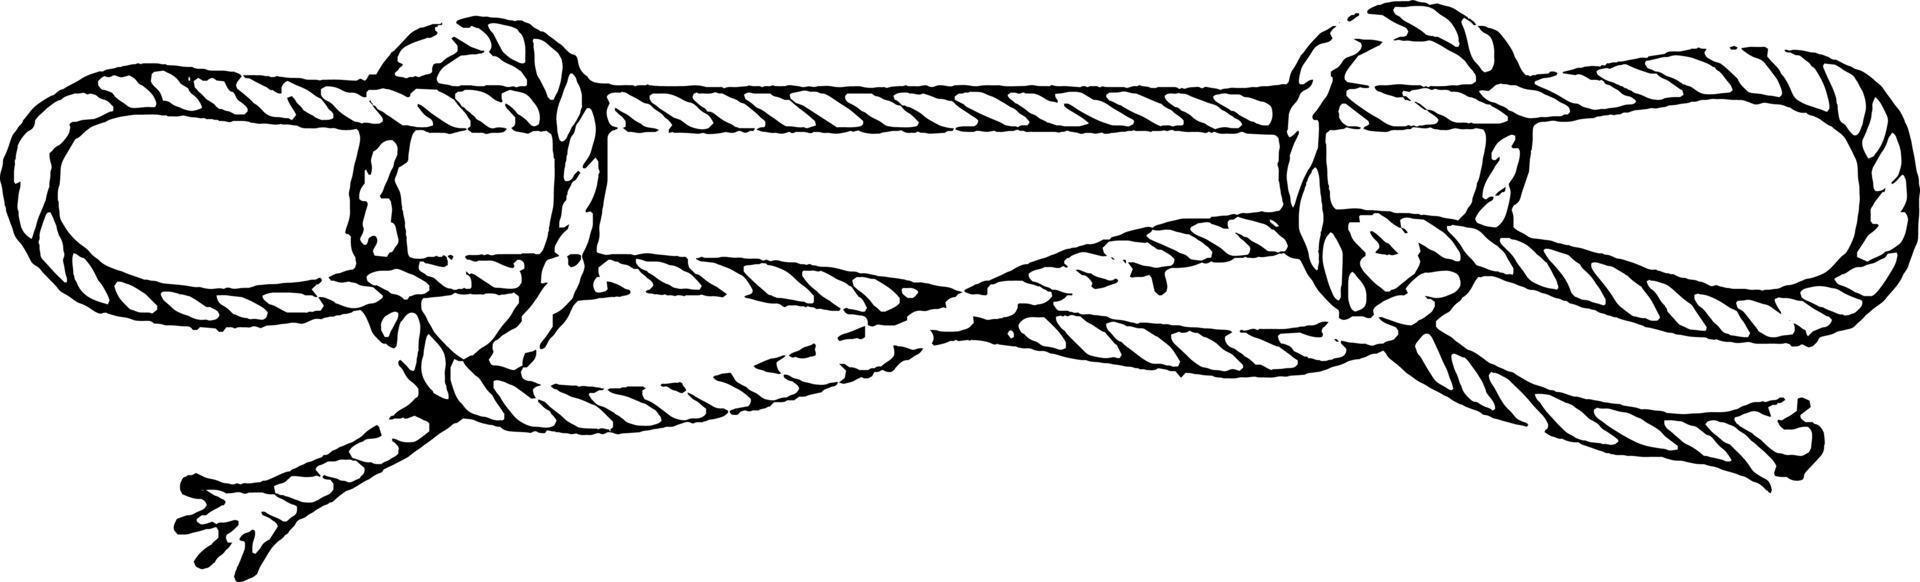 Knoten oder Schafschenkel, Vintage Illustration vektor